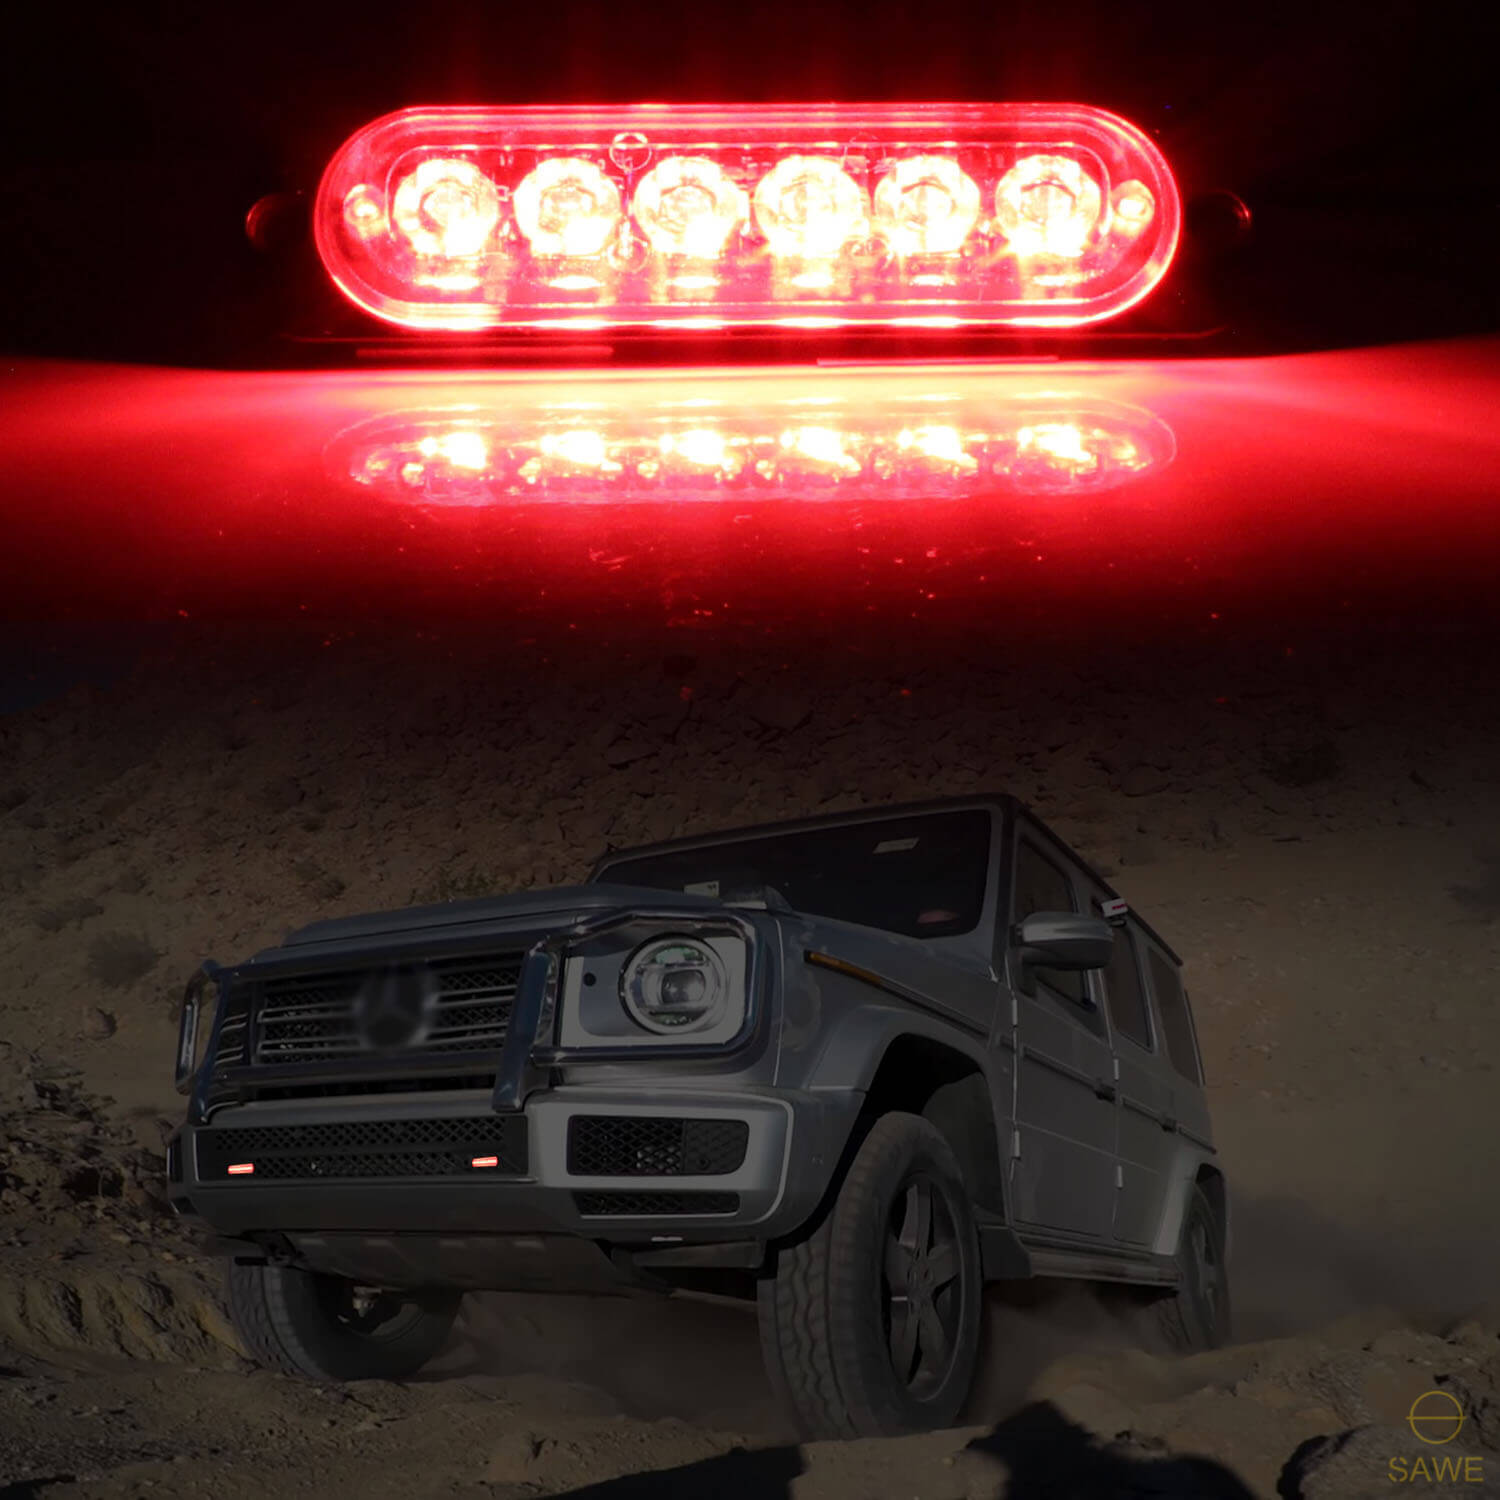 Strobe LED light Truck